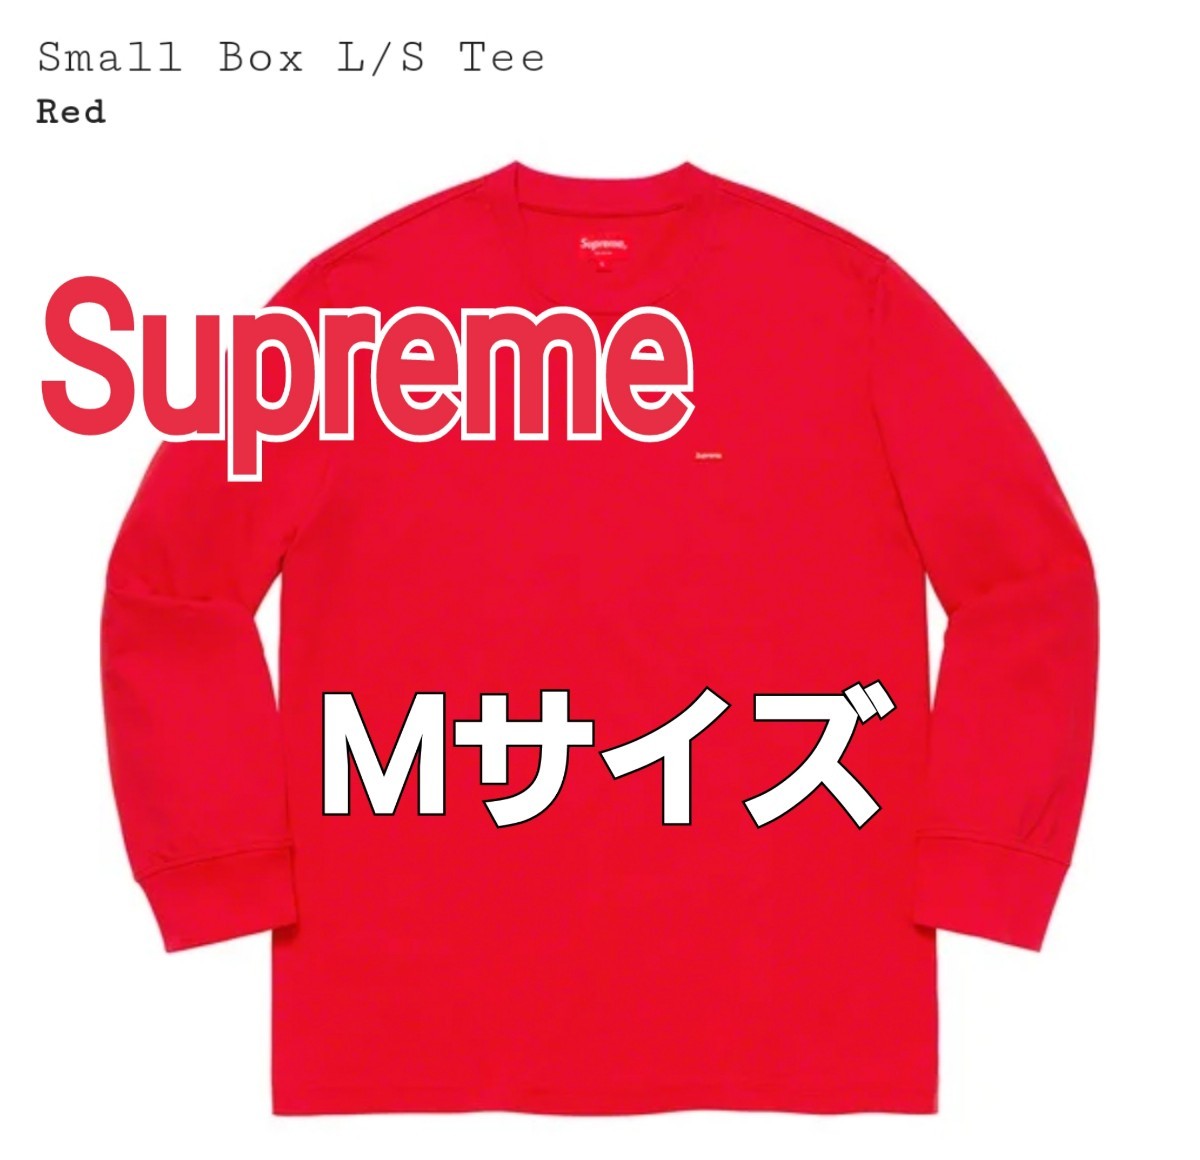 Supreme Small Box L/S Tee Medium Mサイズ Red レッド 赤 スモール